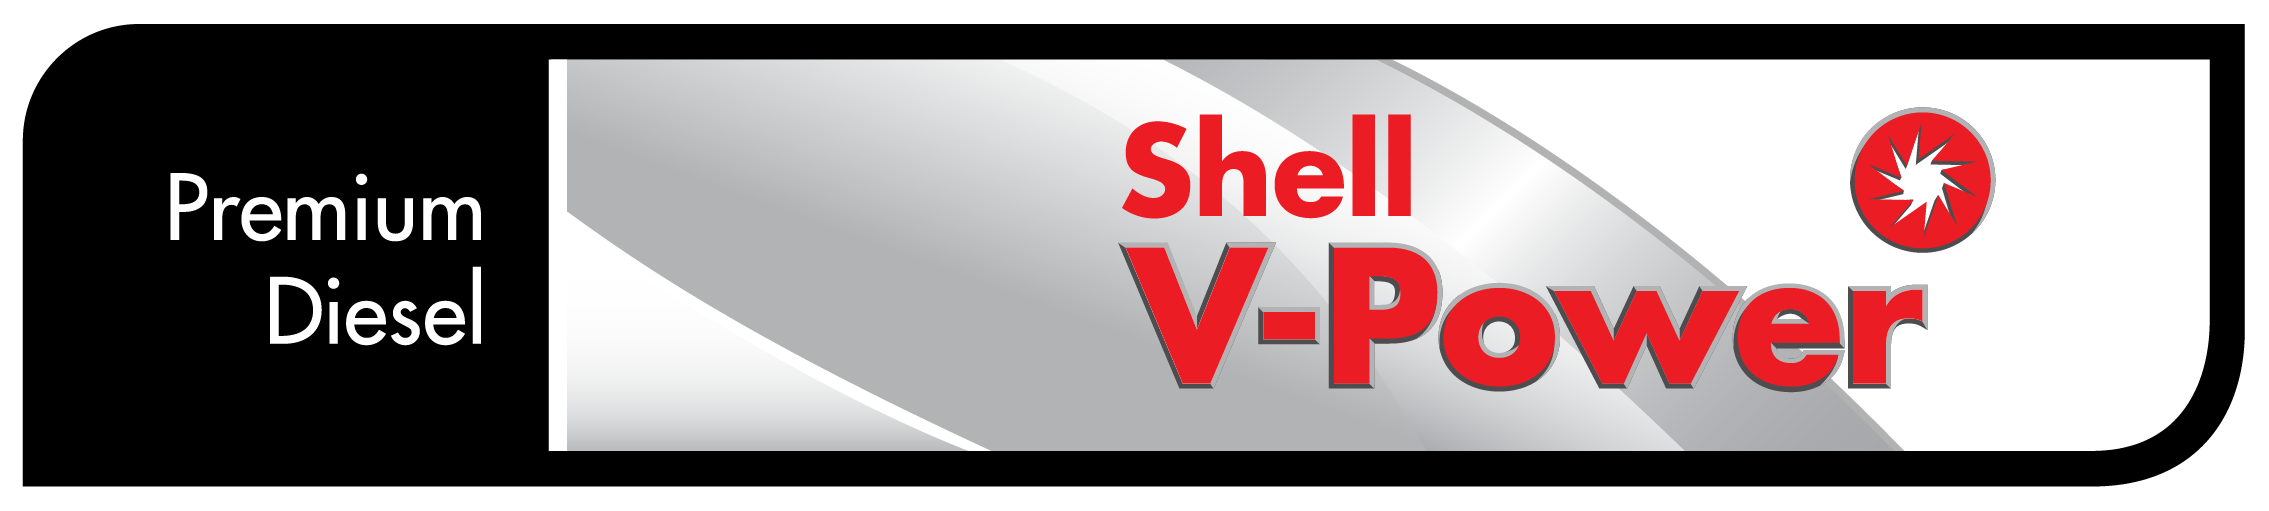 Premium Diesel Shell V-Power